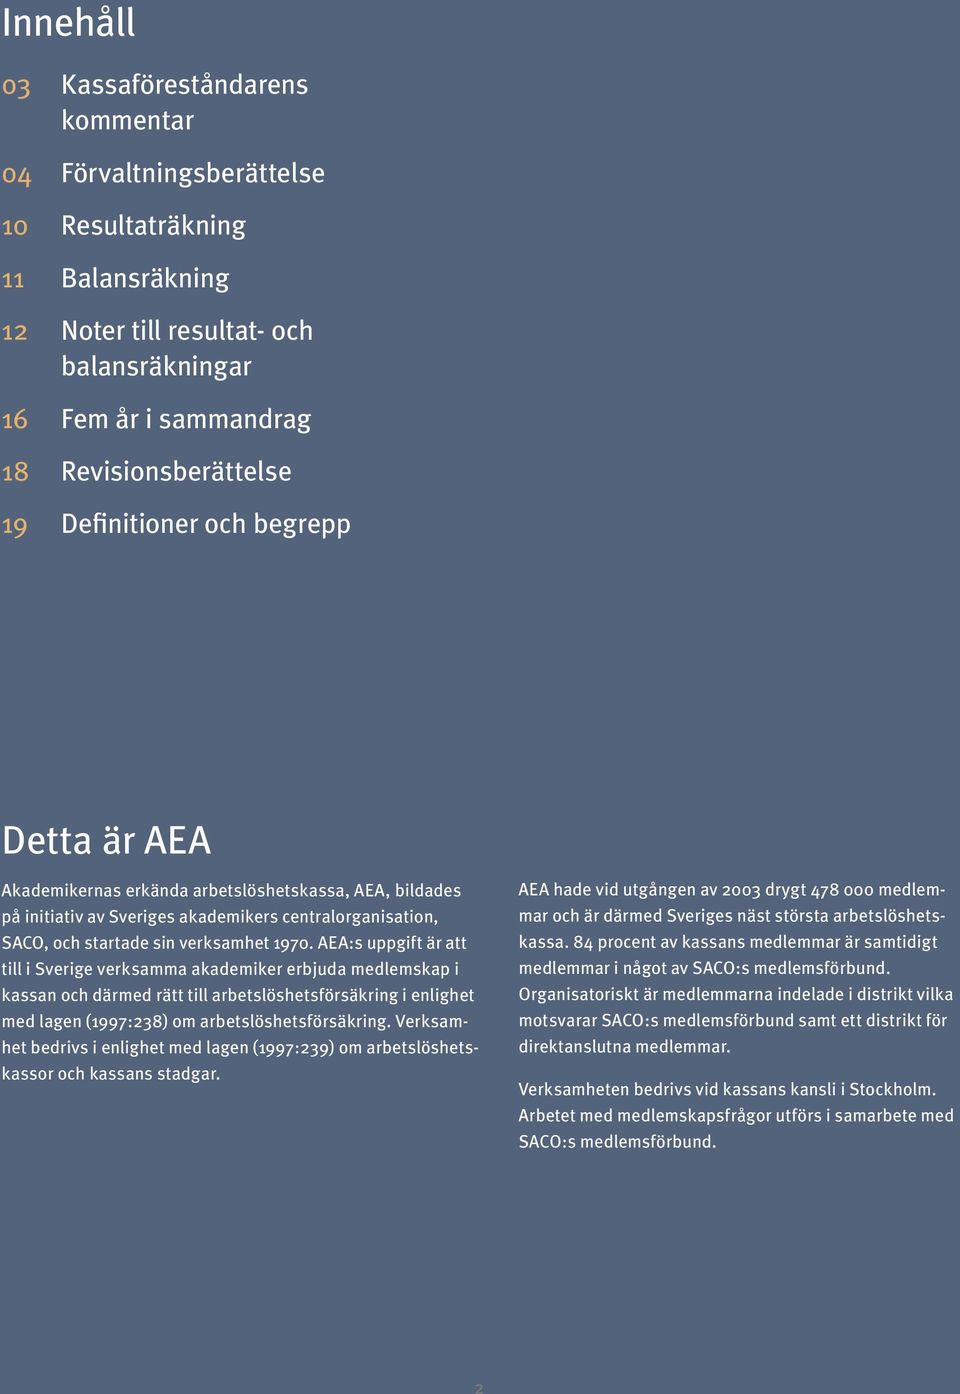 AEA:s uppgift är att till i Sverige verksamma akademiker erbjuda medlemskap i kassan och därmed rätt till arbetslöshetsförsäkring i enlighet med lagen (1997:238) om arbetslöshetsförsäkring.